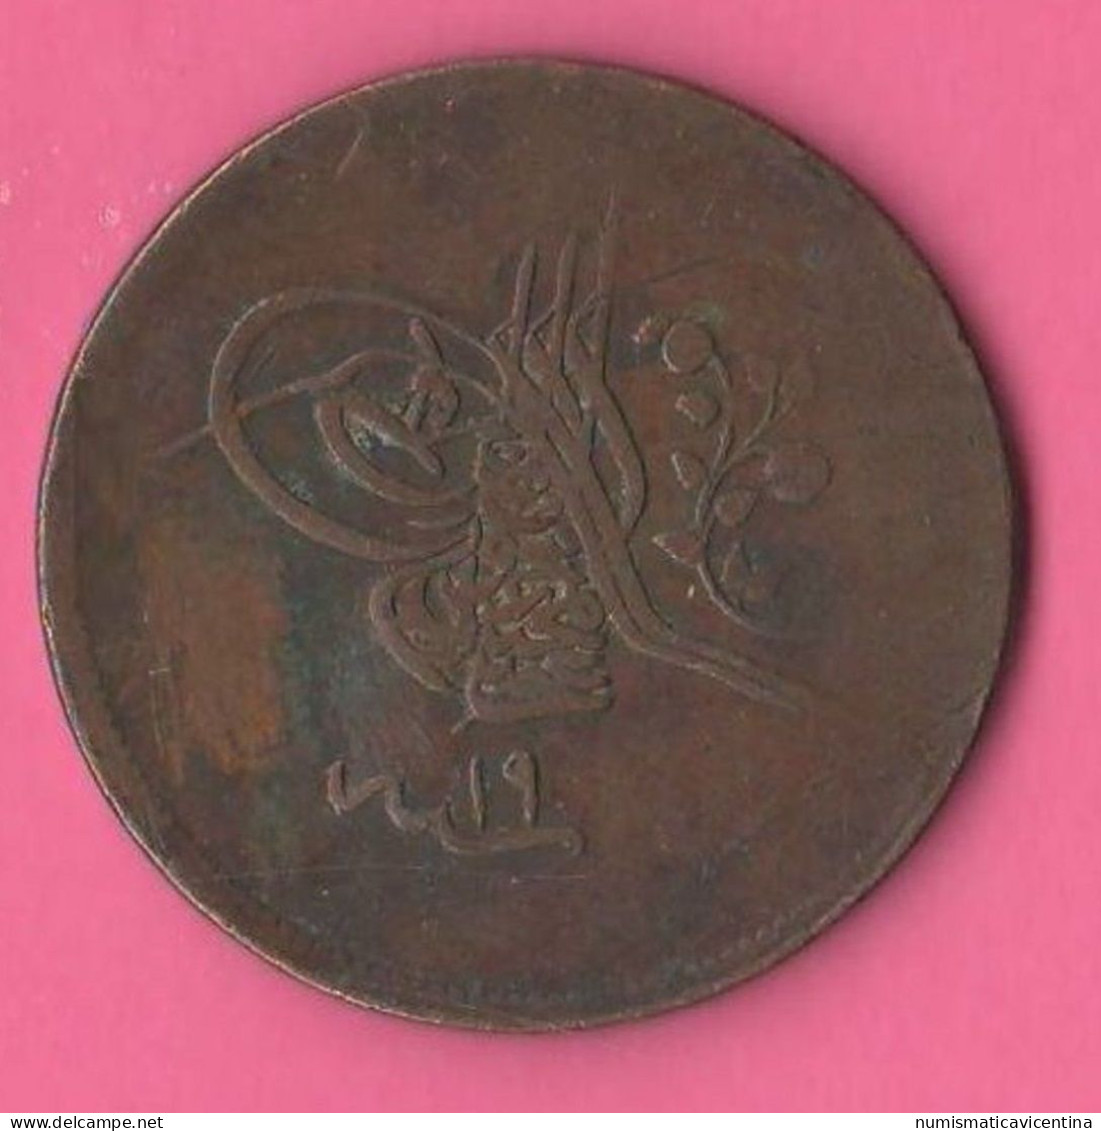 Turquie Türkiye 40 Para AH 1255 Year 19 Turchia Sultan Abdul Mejid Copper Coin - Turquie